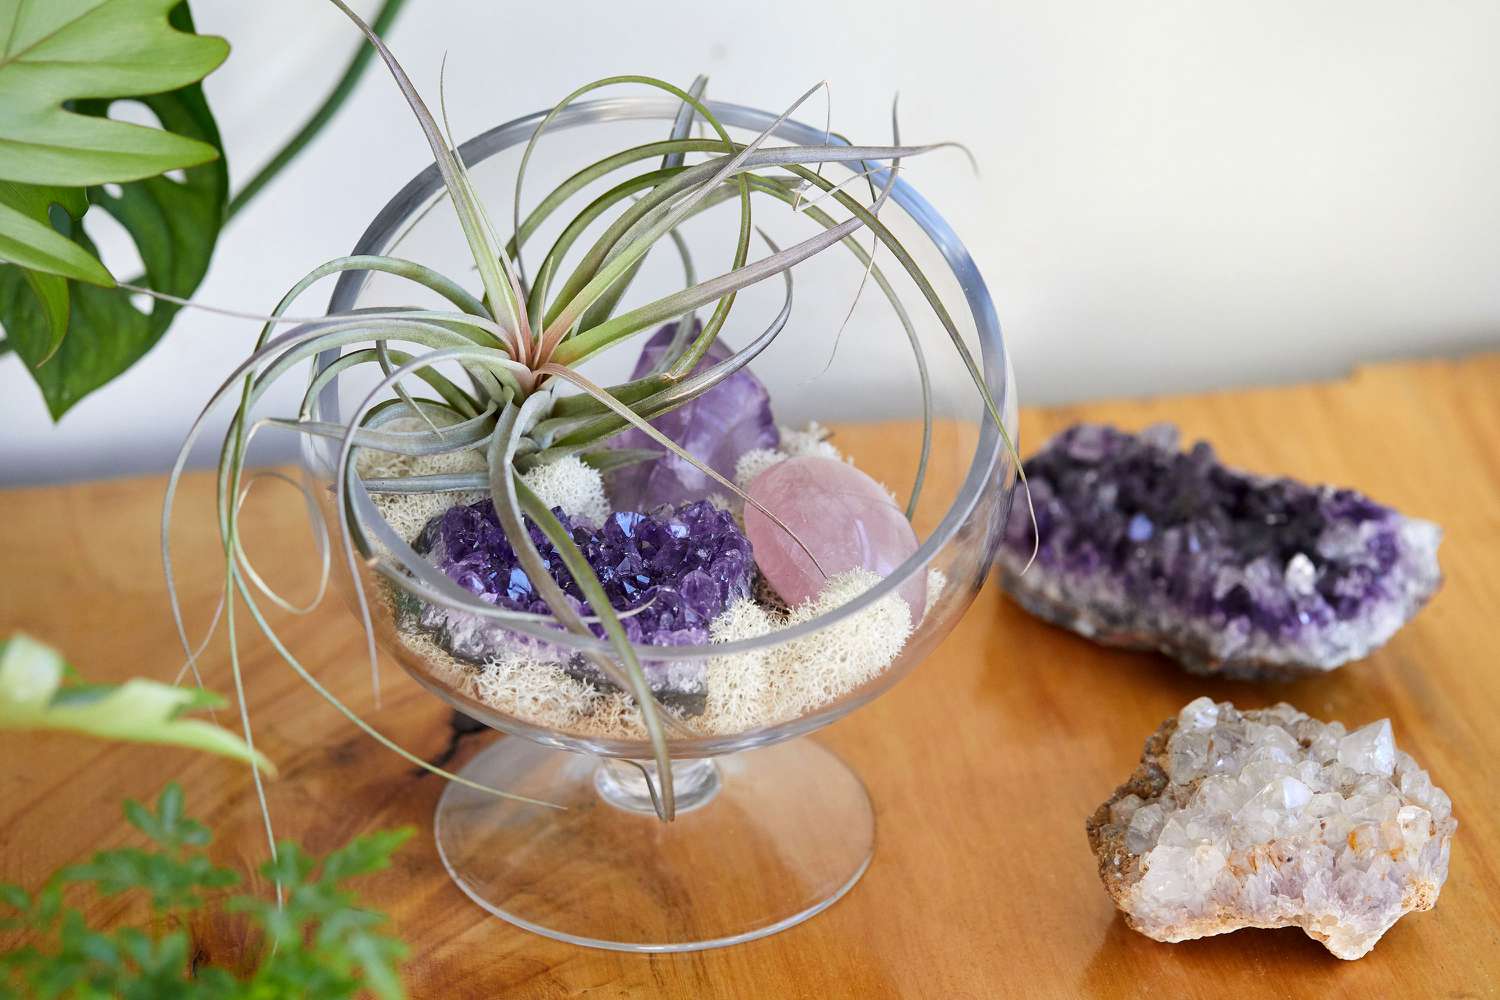 Luftpflanze in klarer Schale umgeben von Kristallen auf Holzoberfläche